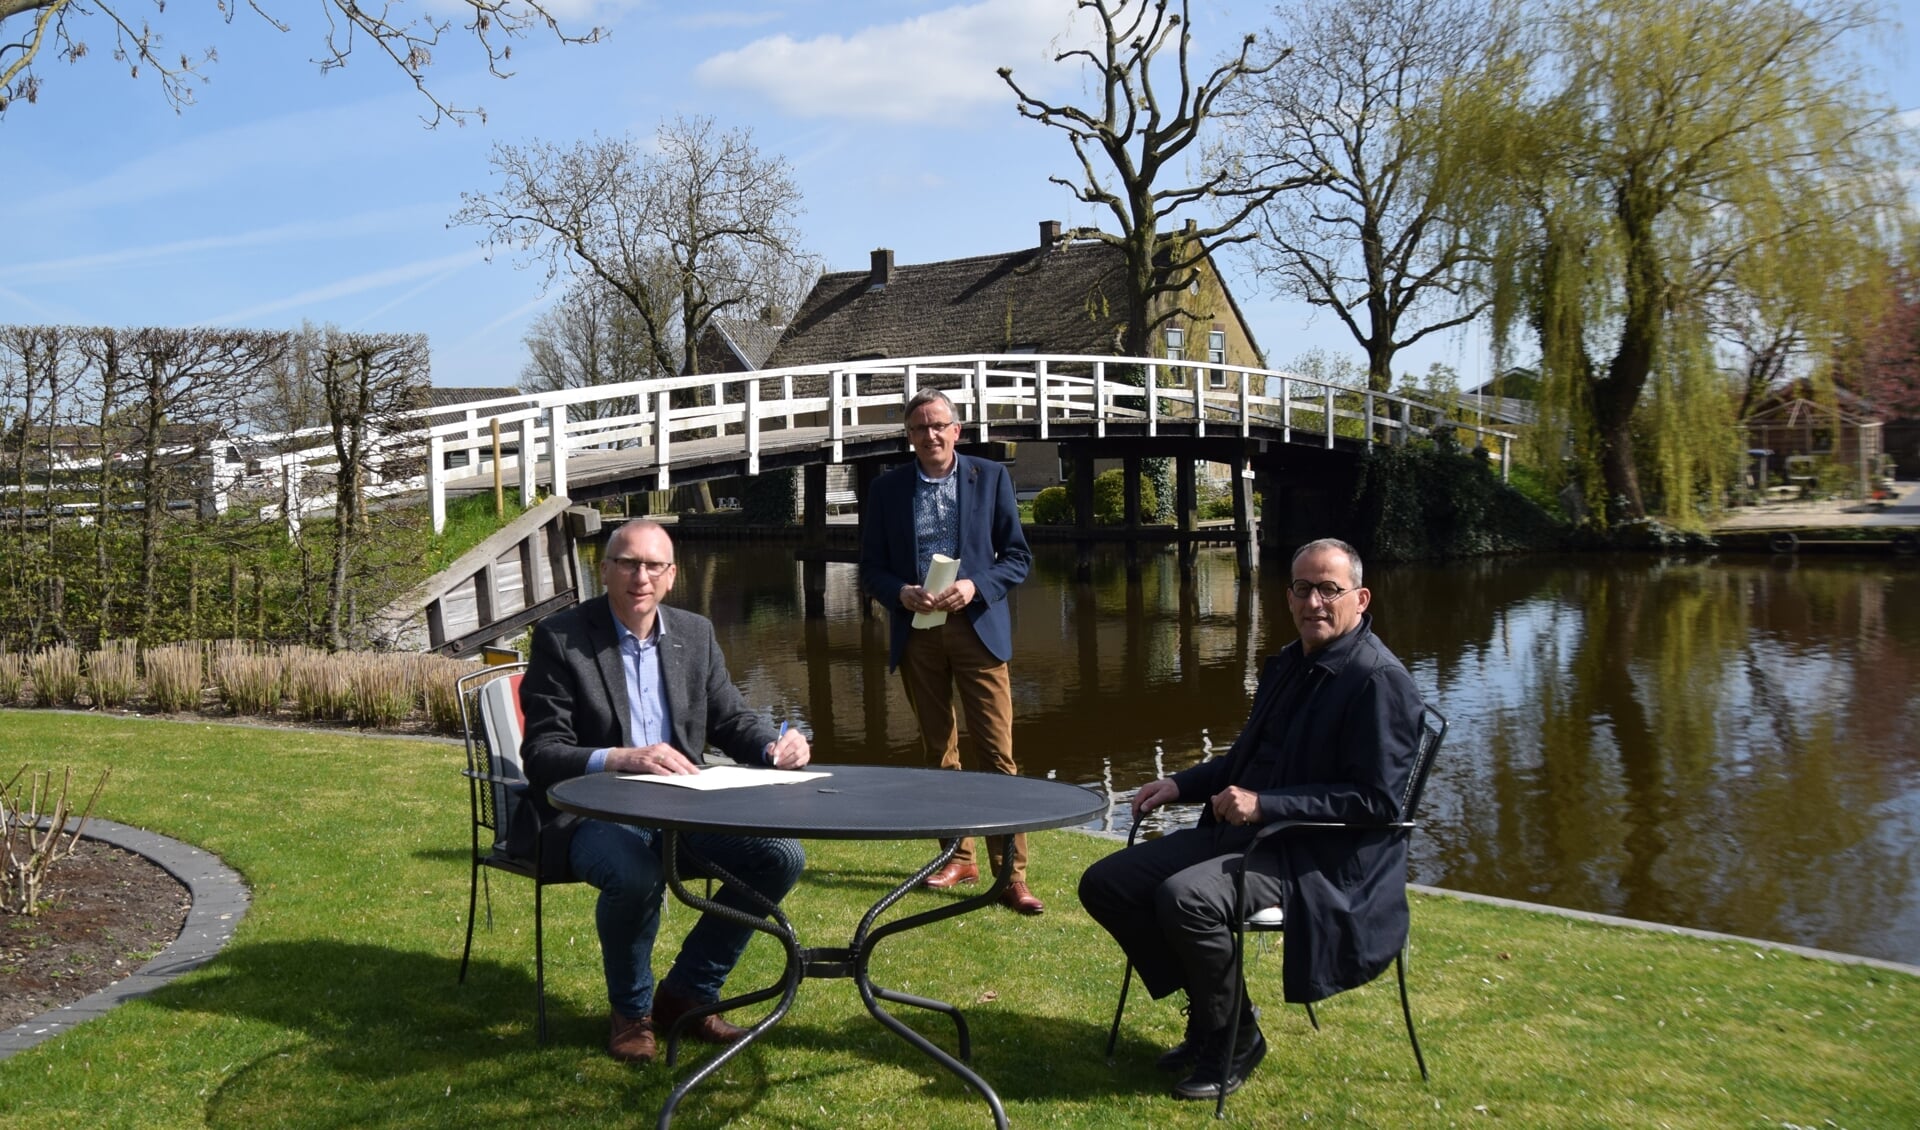 Vandaag werd het officieel: Wout de Jong is eigenaar van de Pinkeveerse brug in Giessenburg.